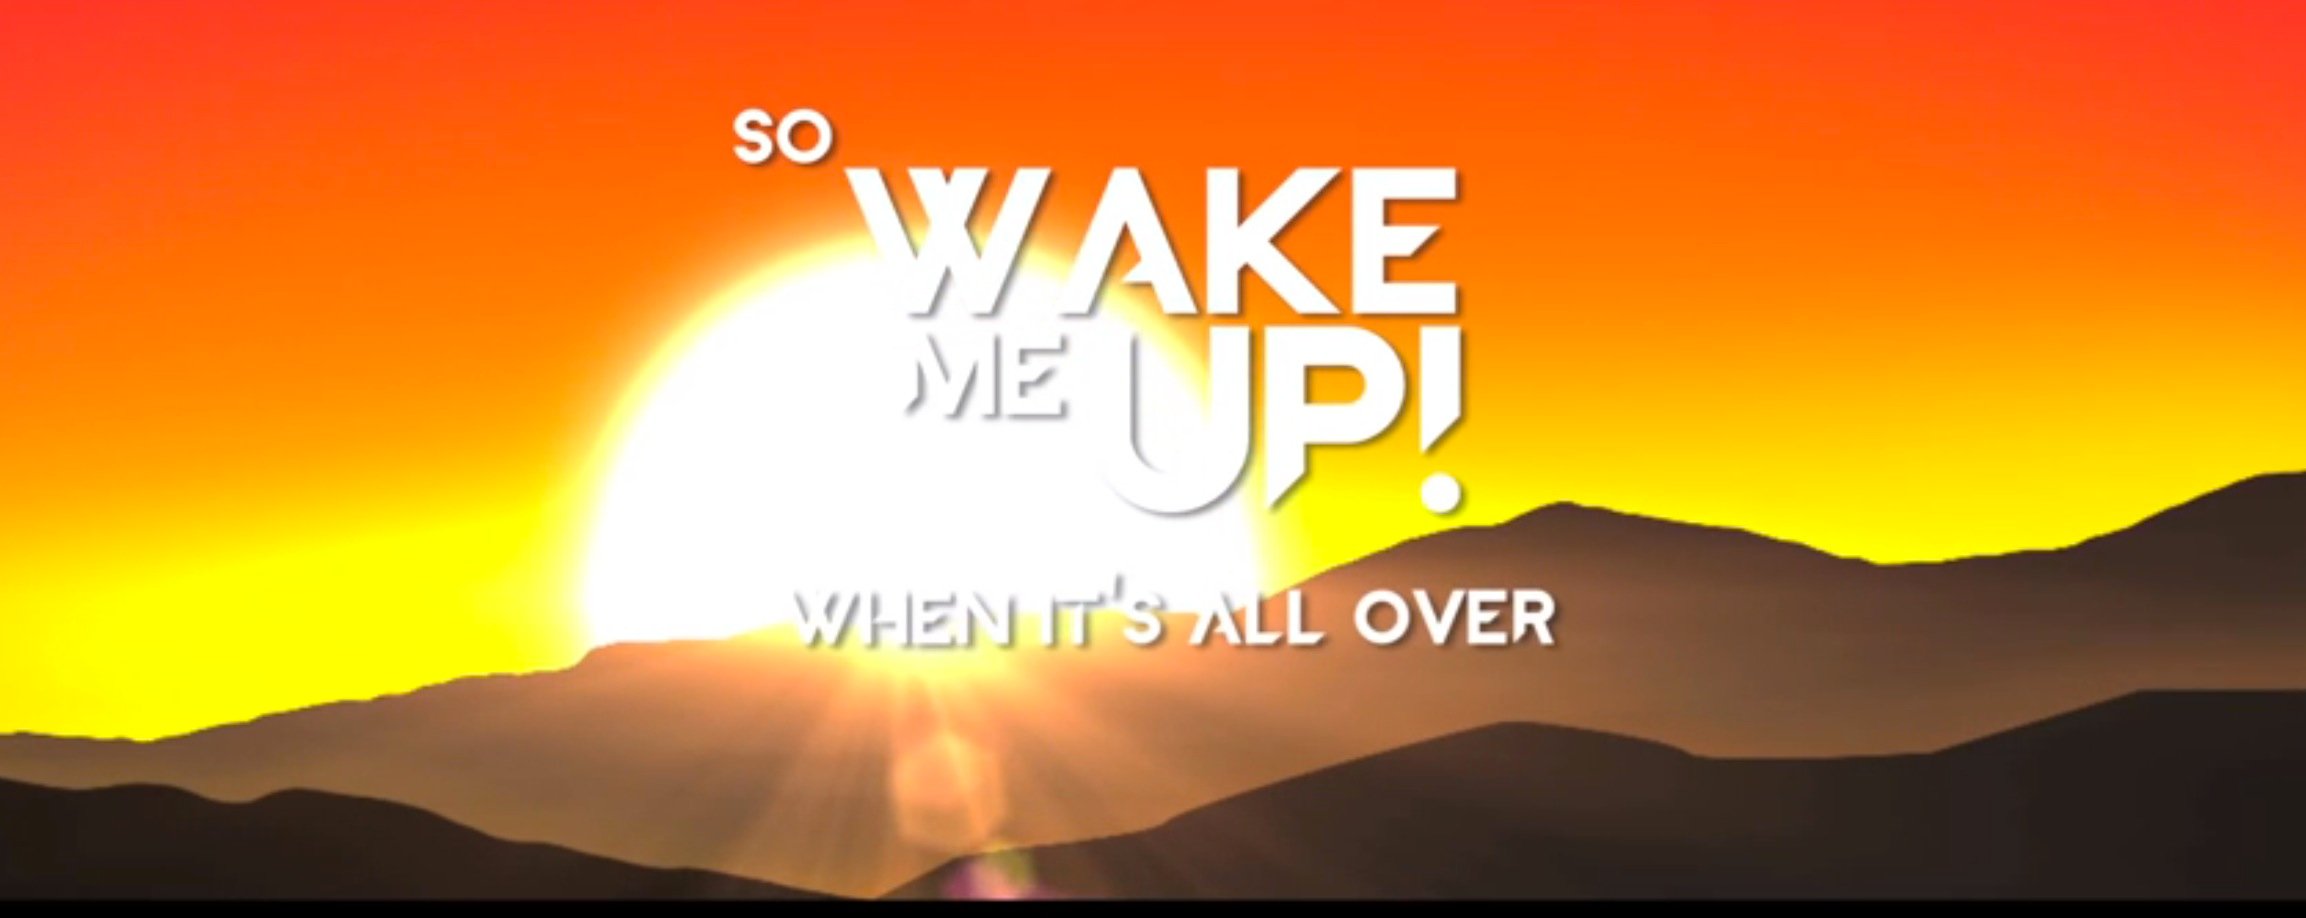 Avicii Wake Me Up Lyrics